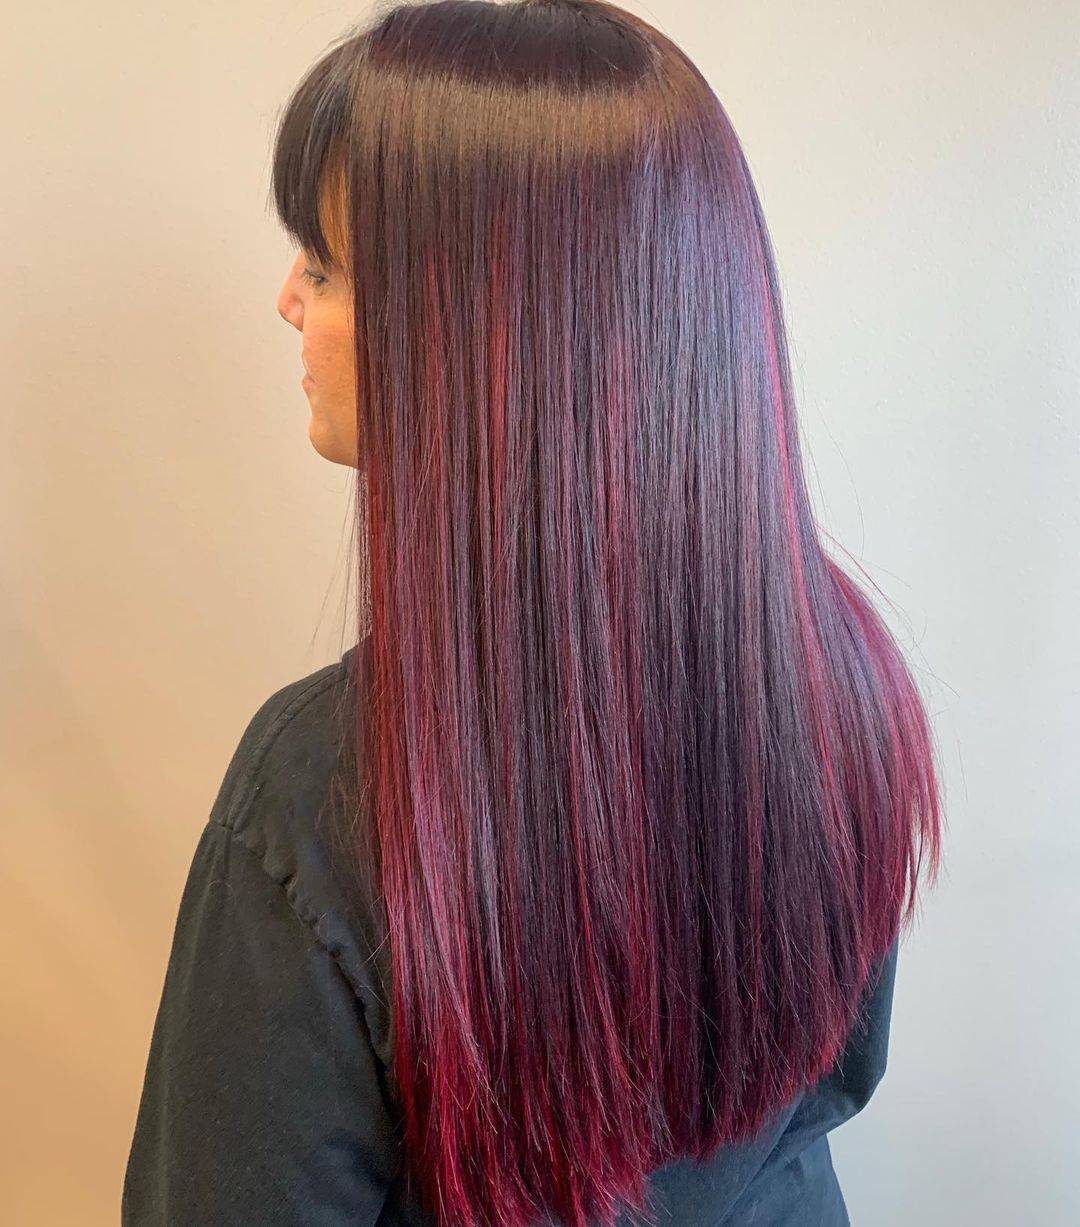 Burgundy hair color 442 burgundy hair color | burgundy hair color for women | burgundy hair color highlights Burgundy Hair Color